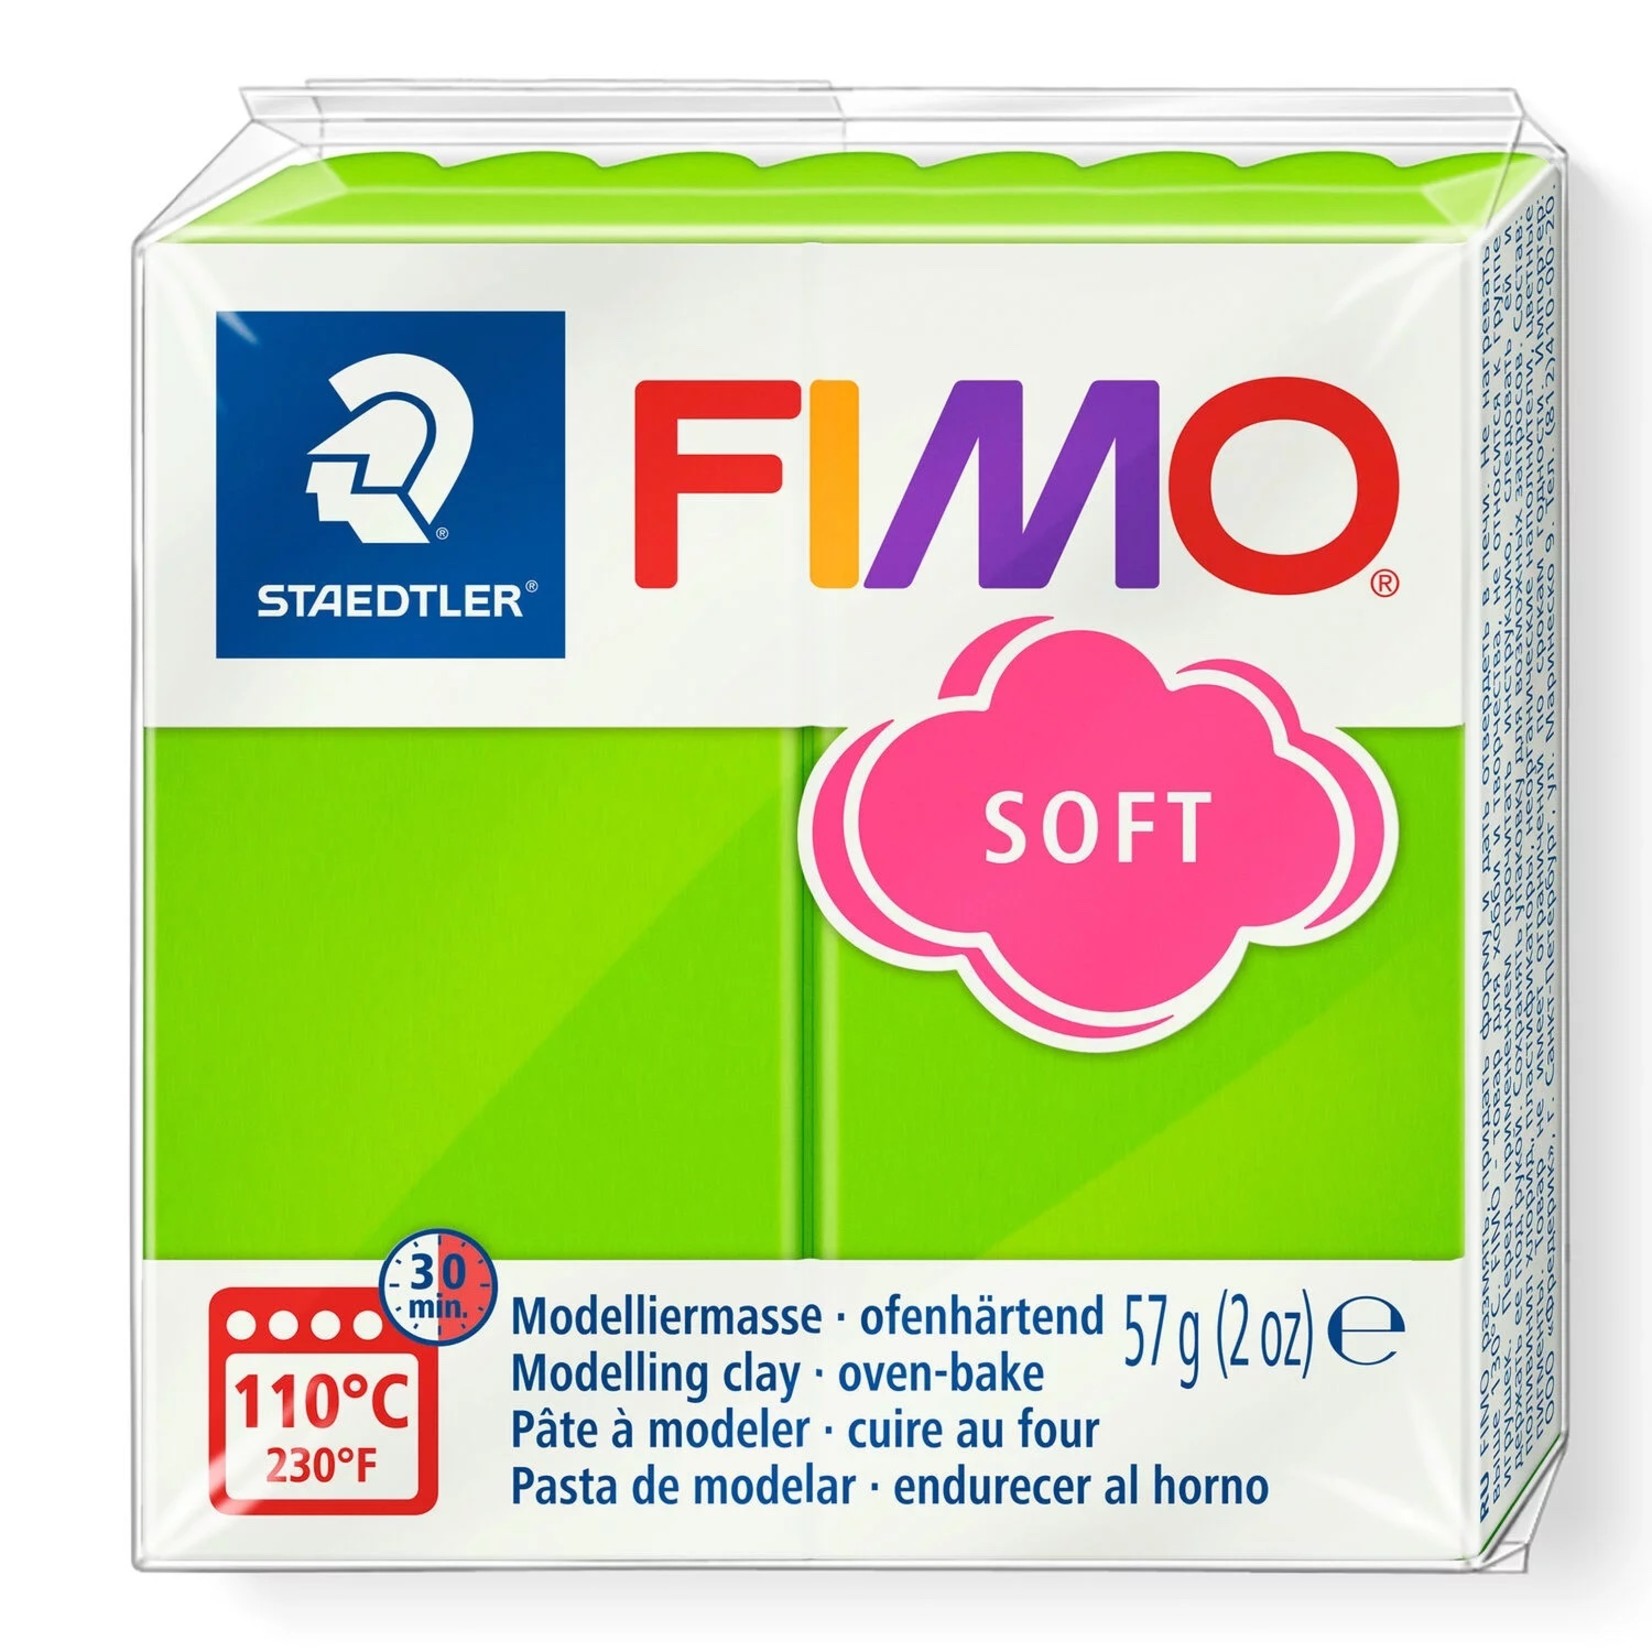 STAEDTLER FIMO SOFT 50 APPLE GREEN